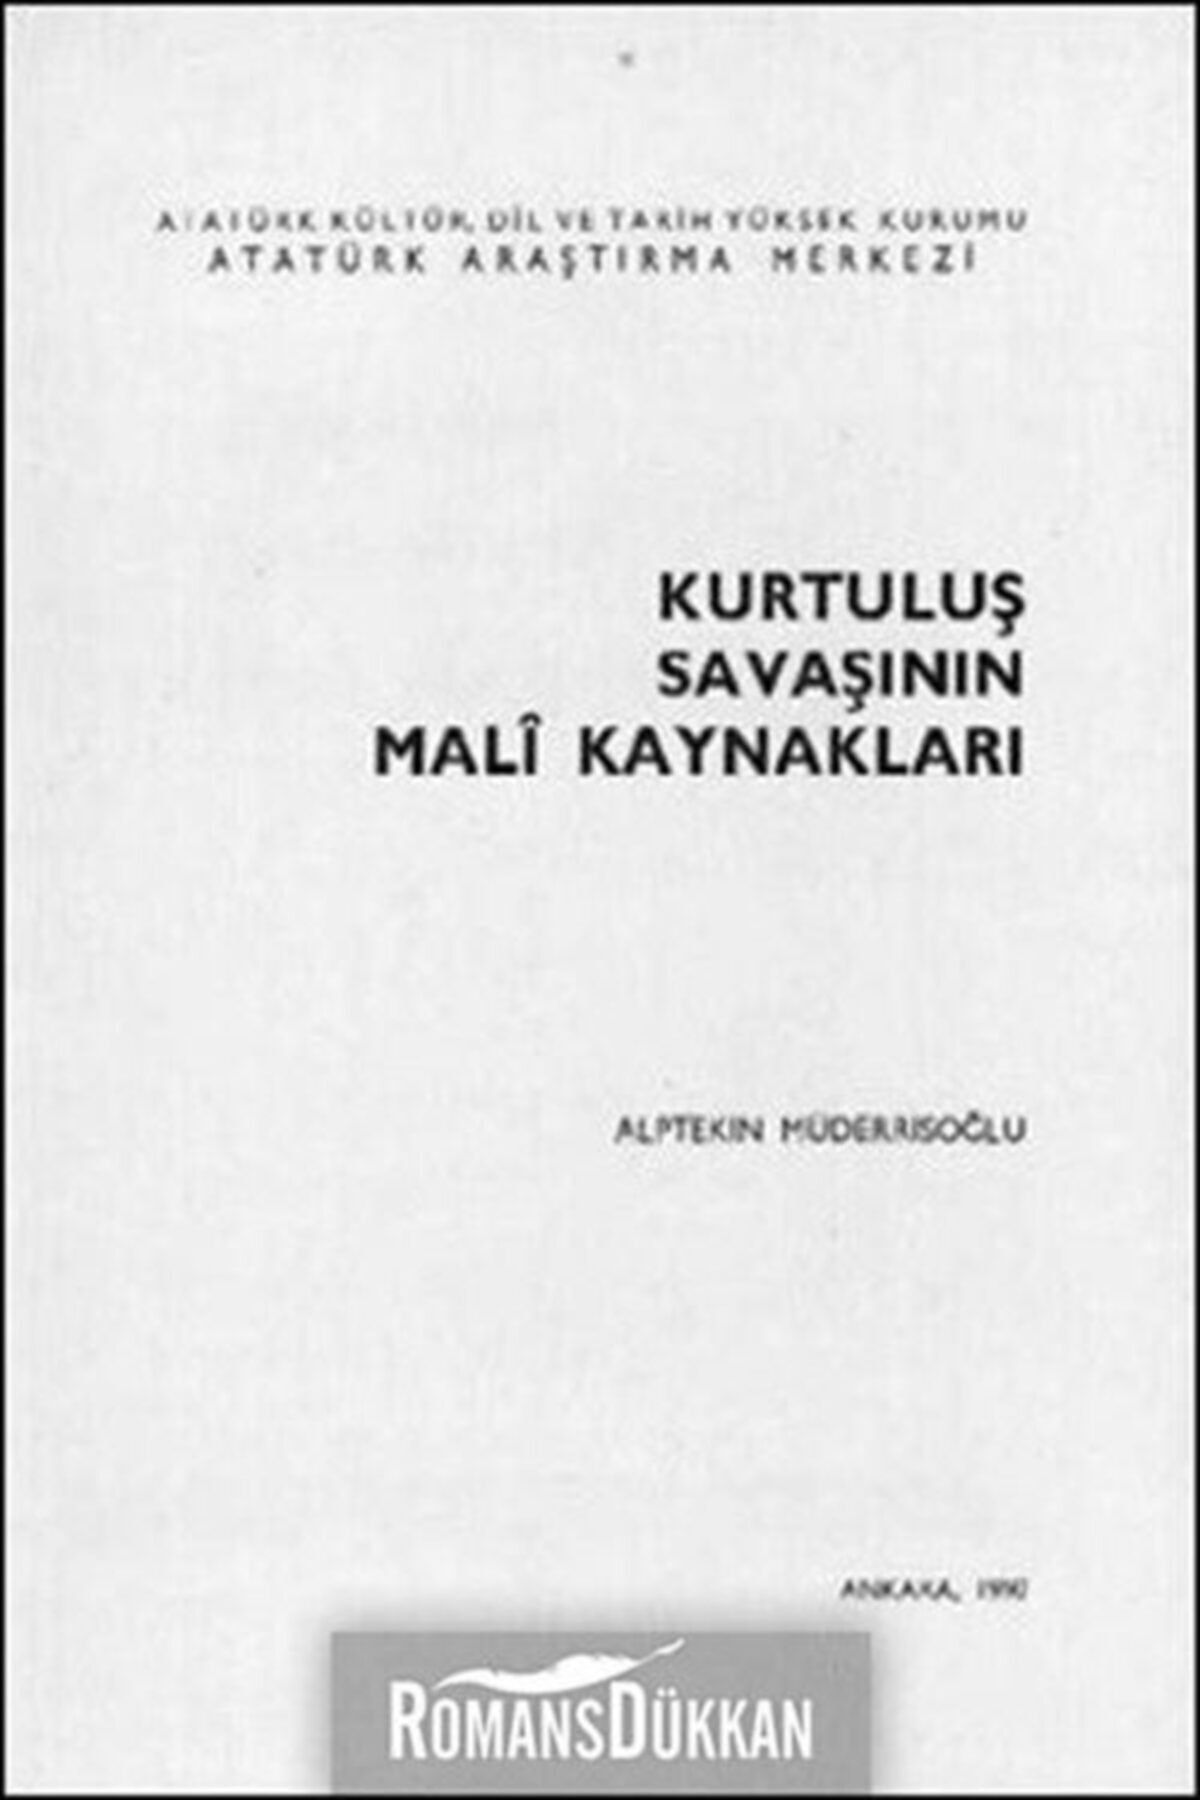 Atatürk Araştırma Merkezi Kurtuluş Savaşının Mali Kaynakları